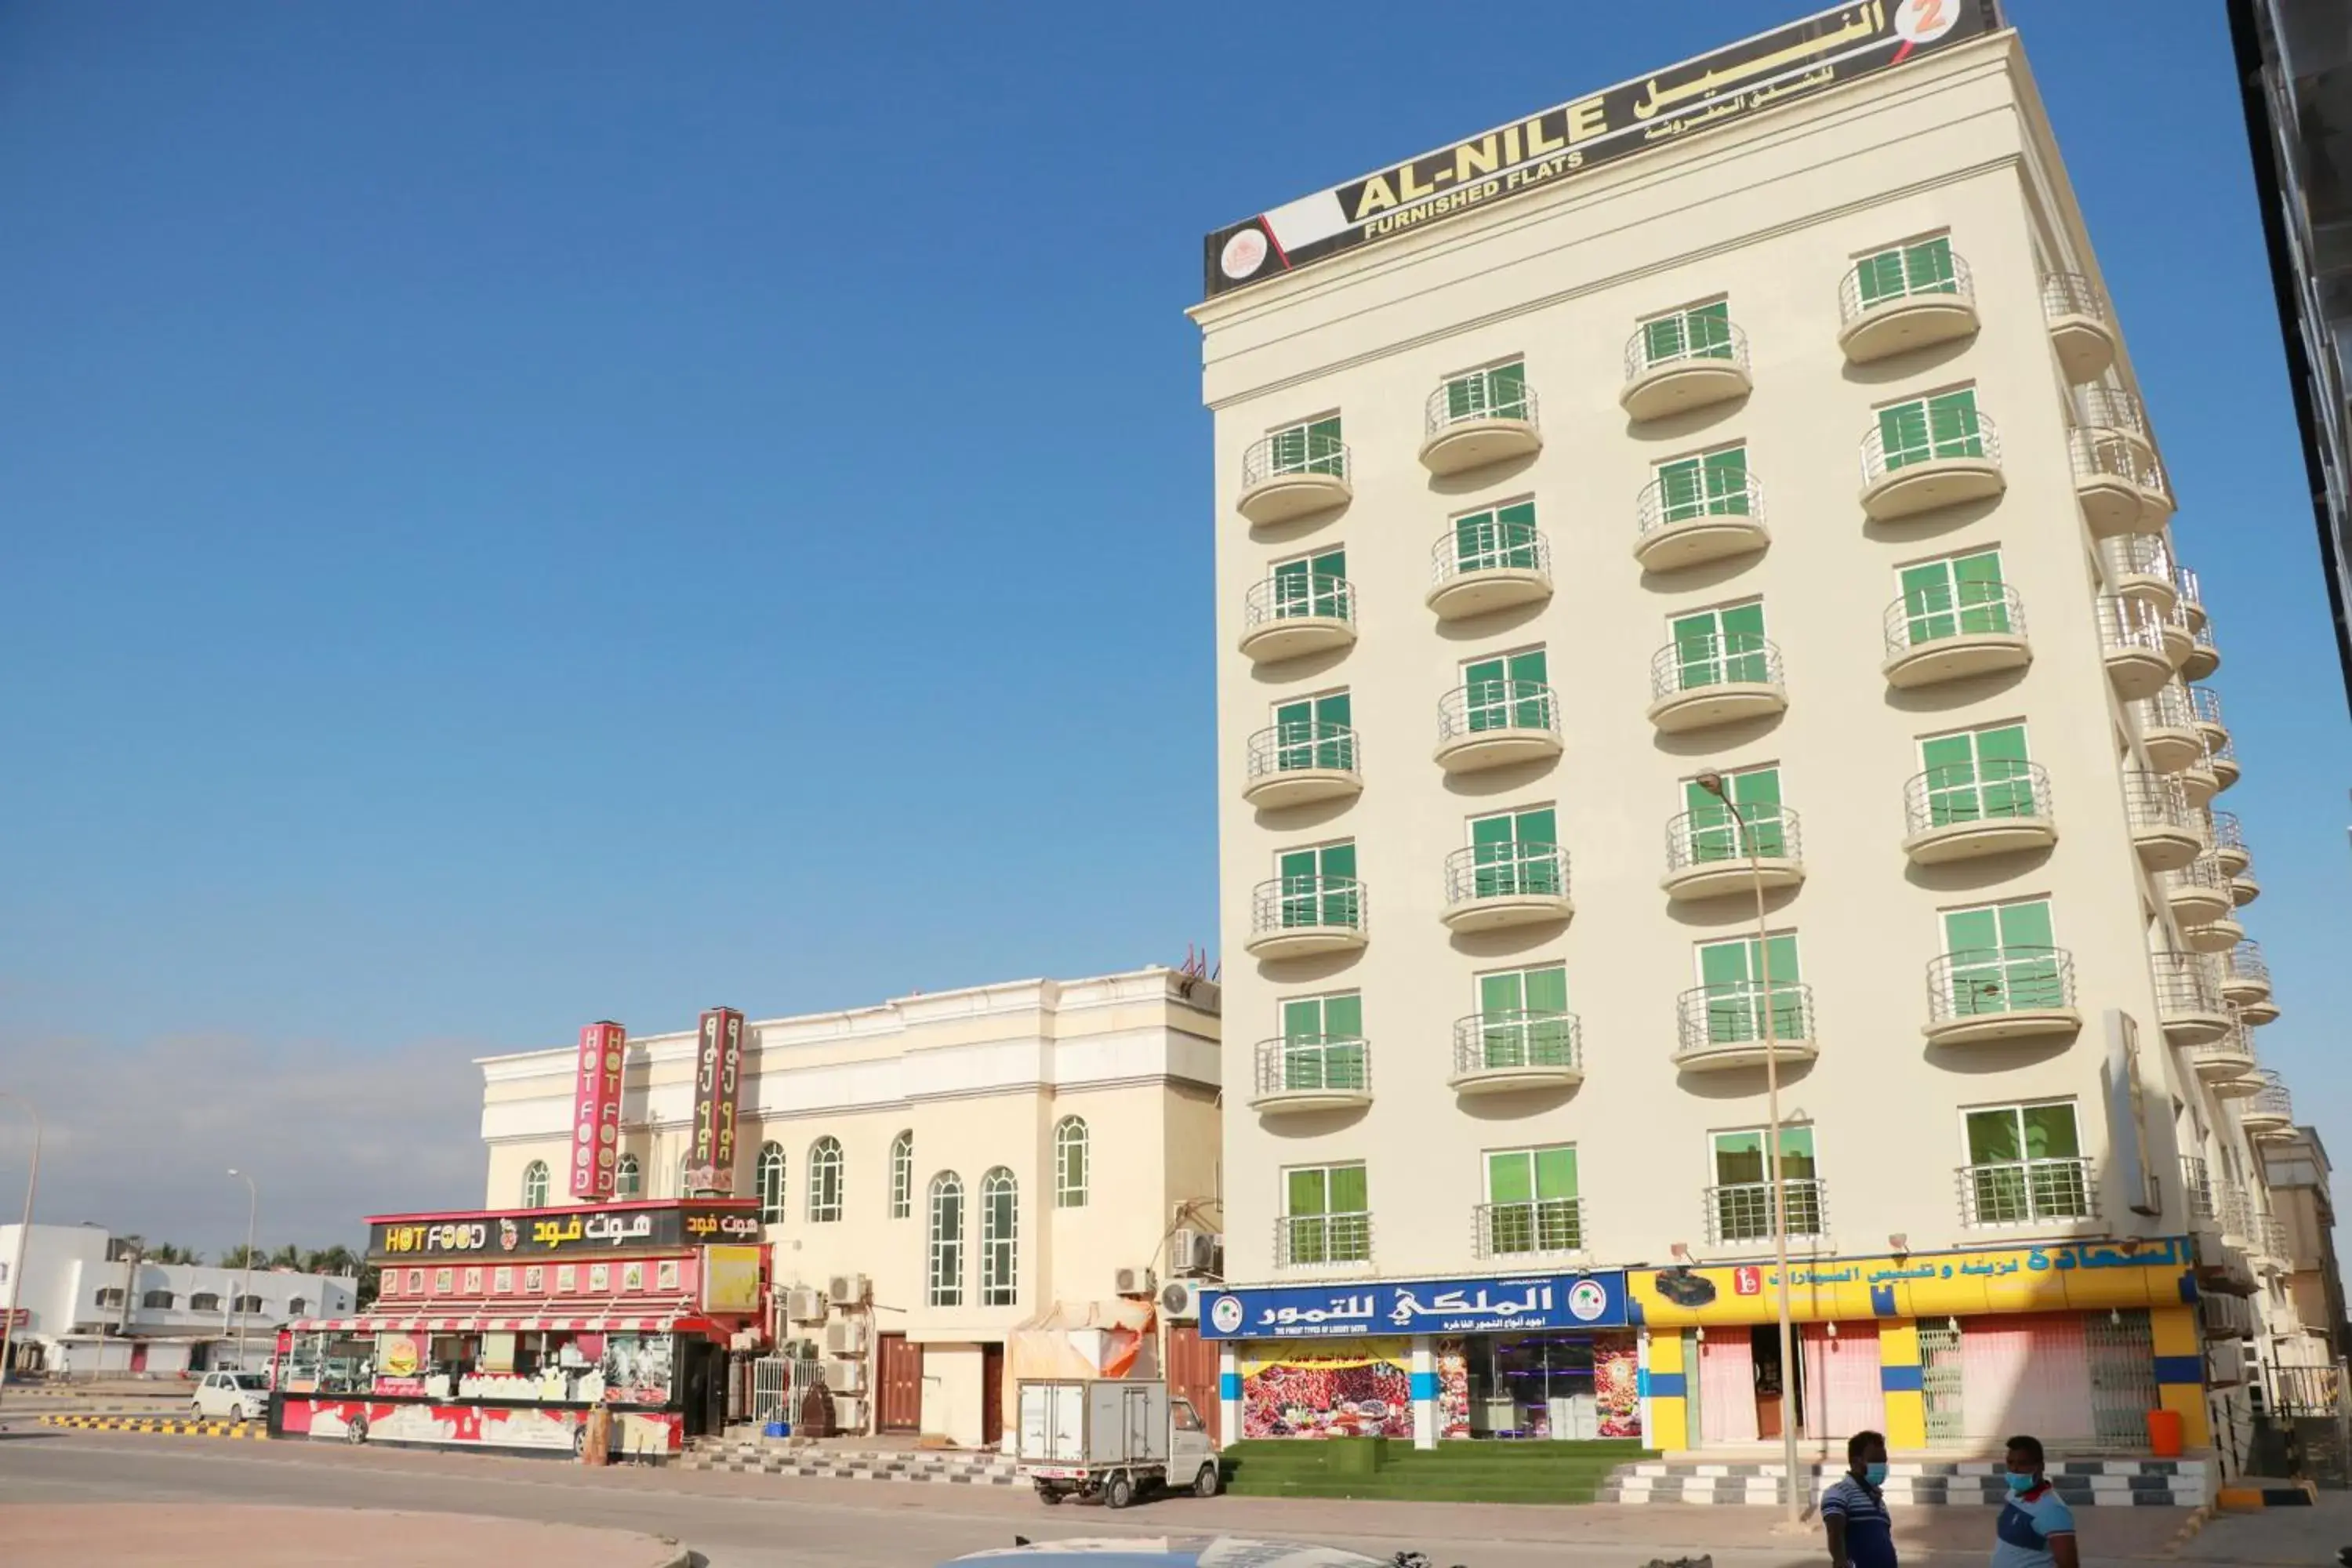 Property Building in Al Nile Hotel